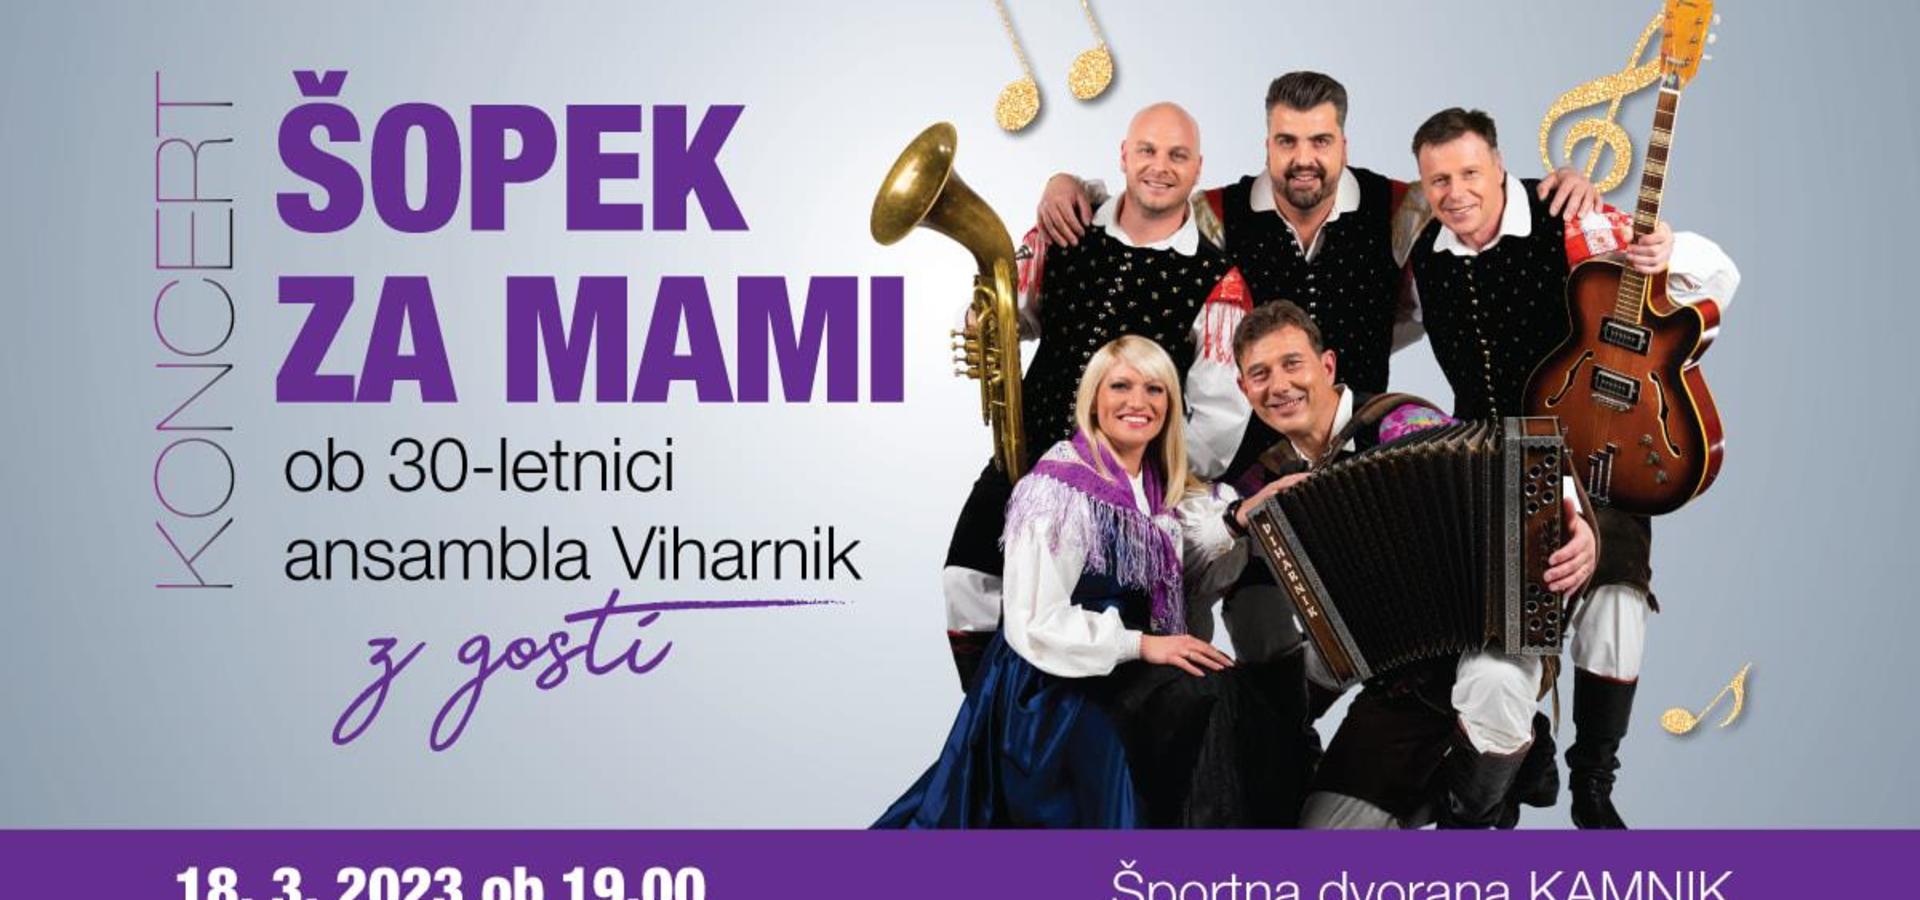 Koncert Šopek za mami ob 30-letnici ansambla Viharnik